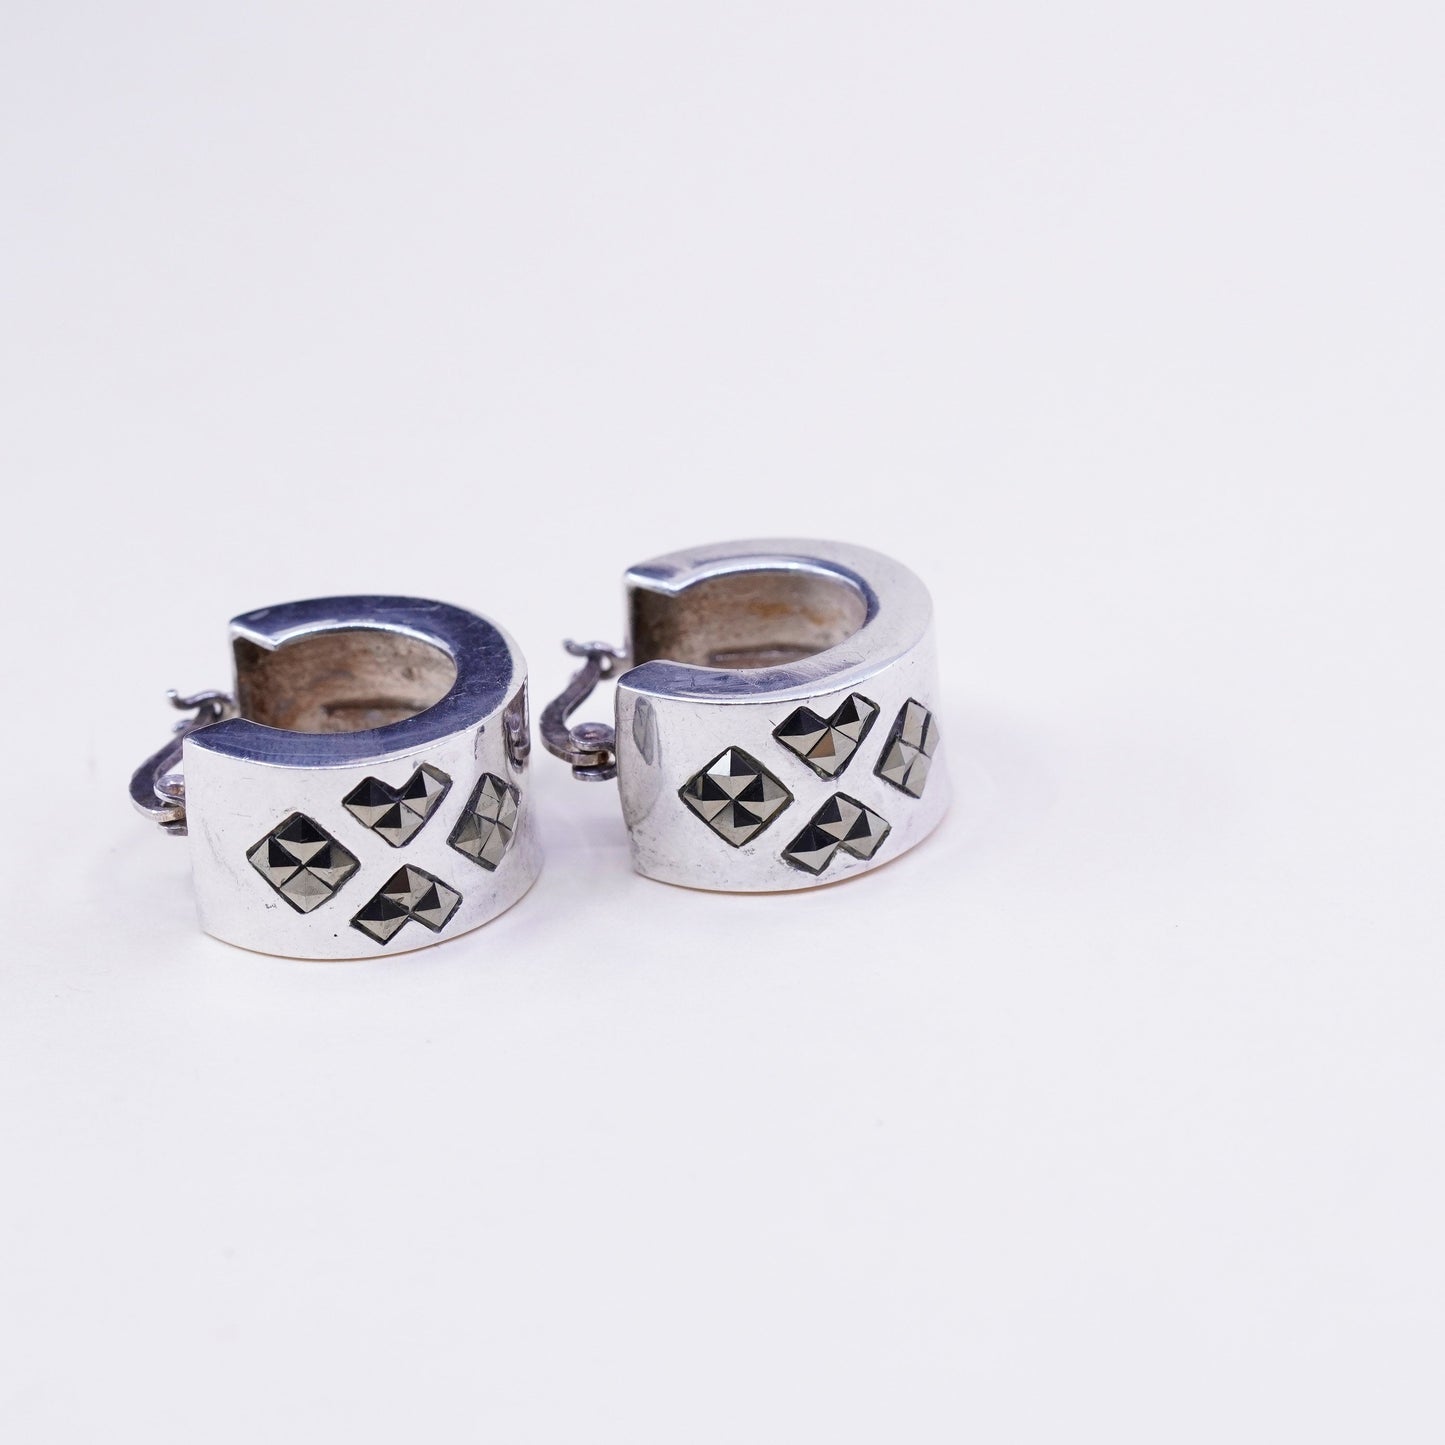 Vintage Sterling silver handmade earrings, 925 Huggie hoops with marcasite